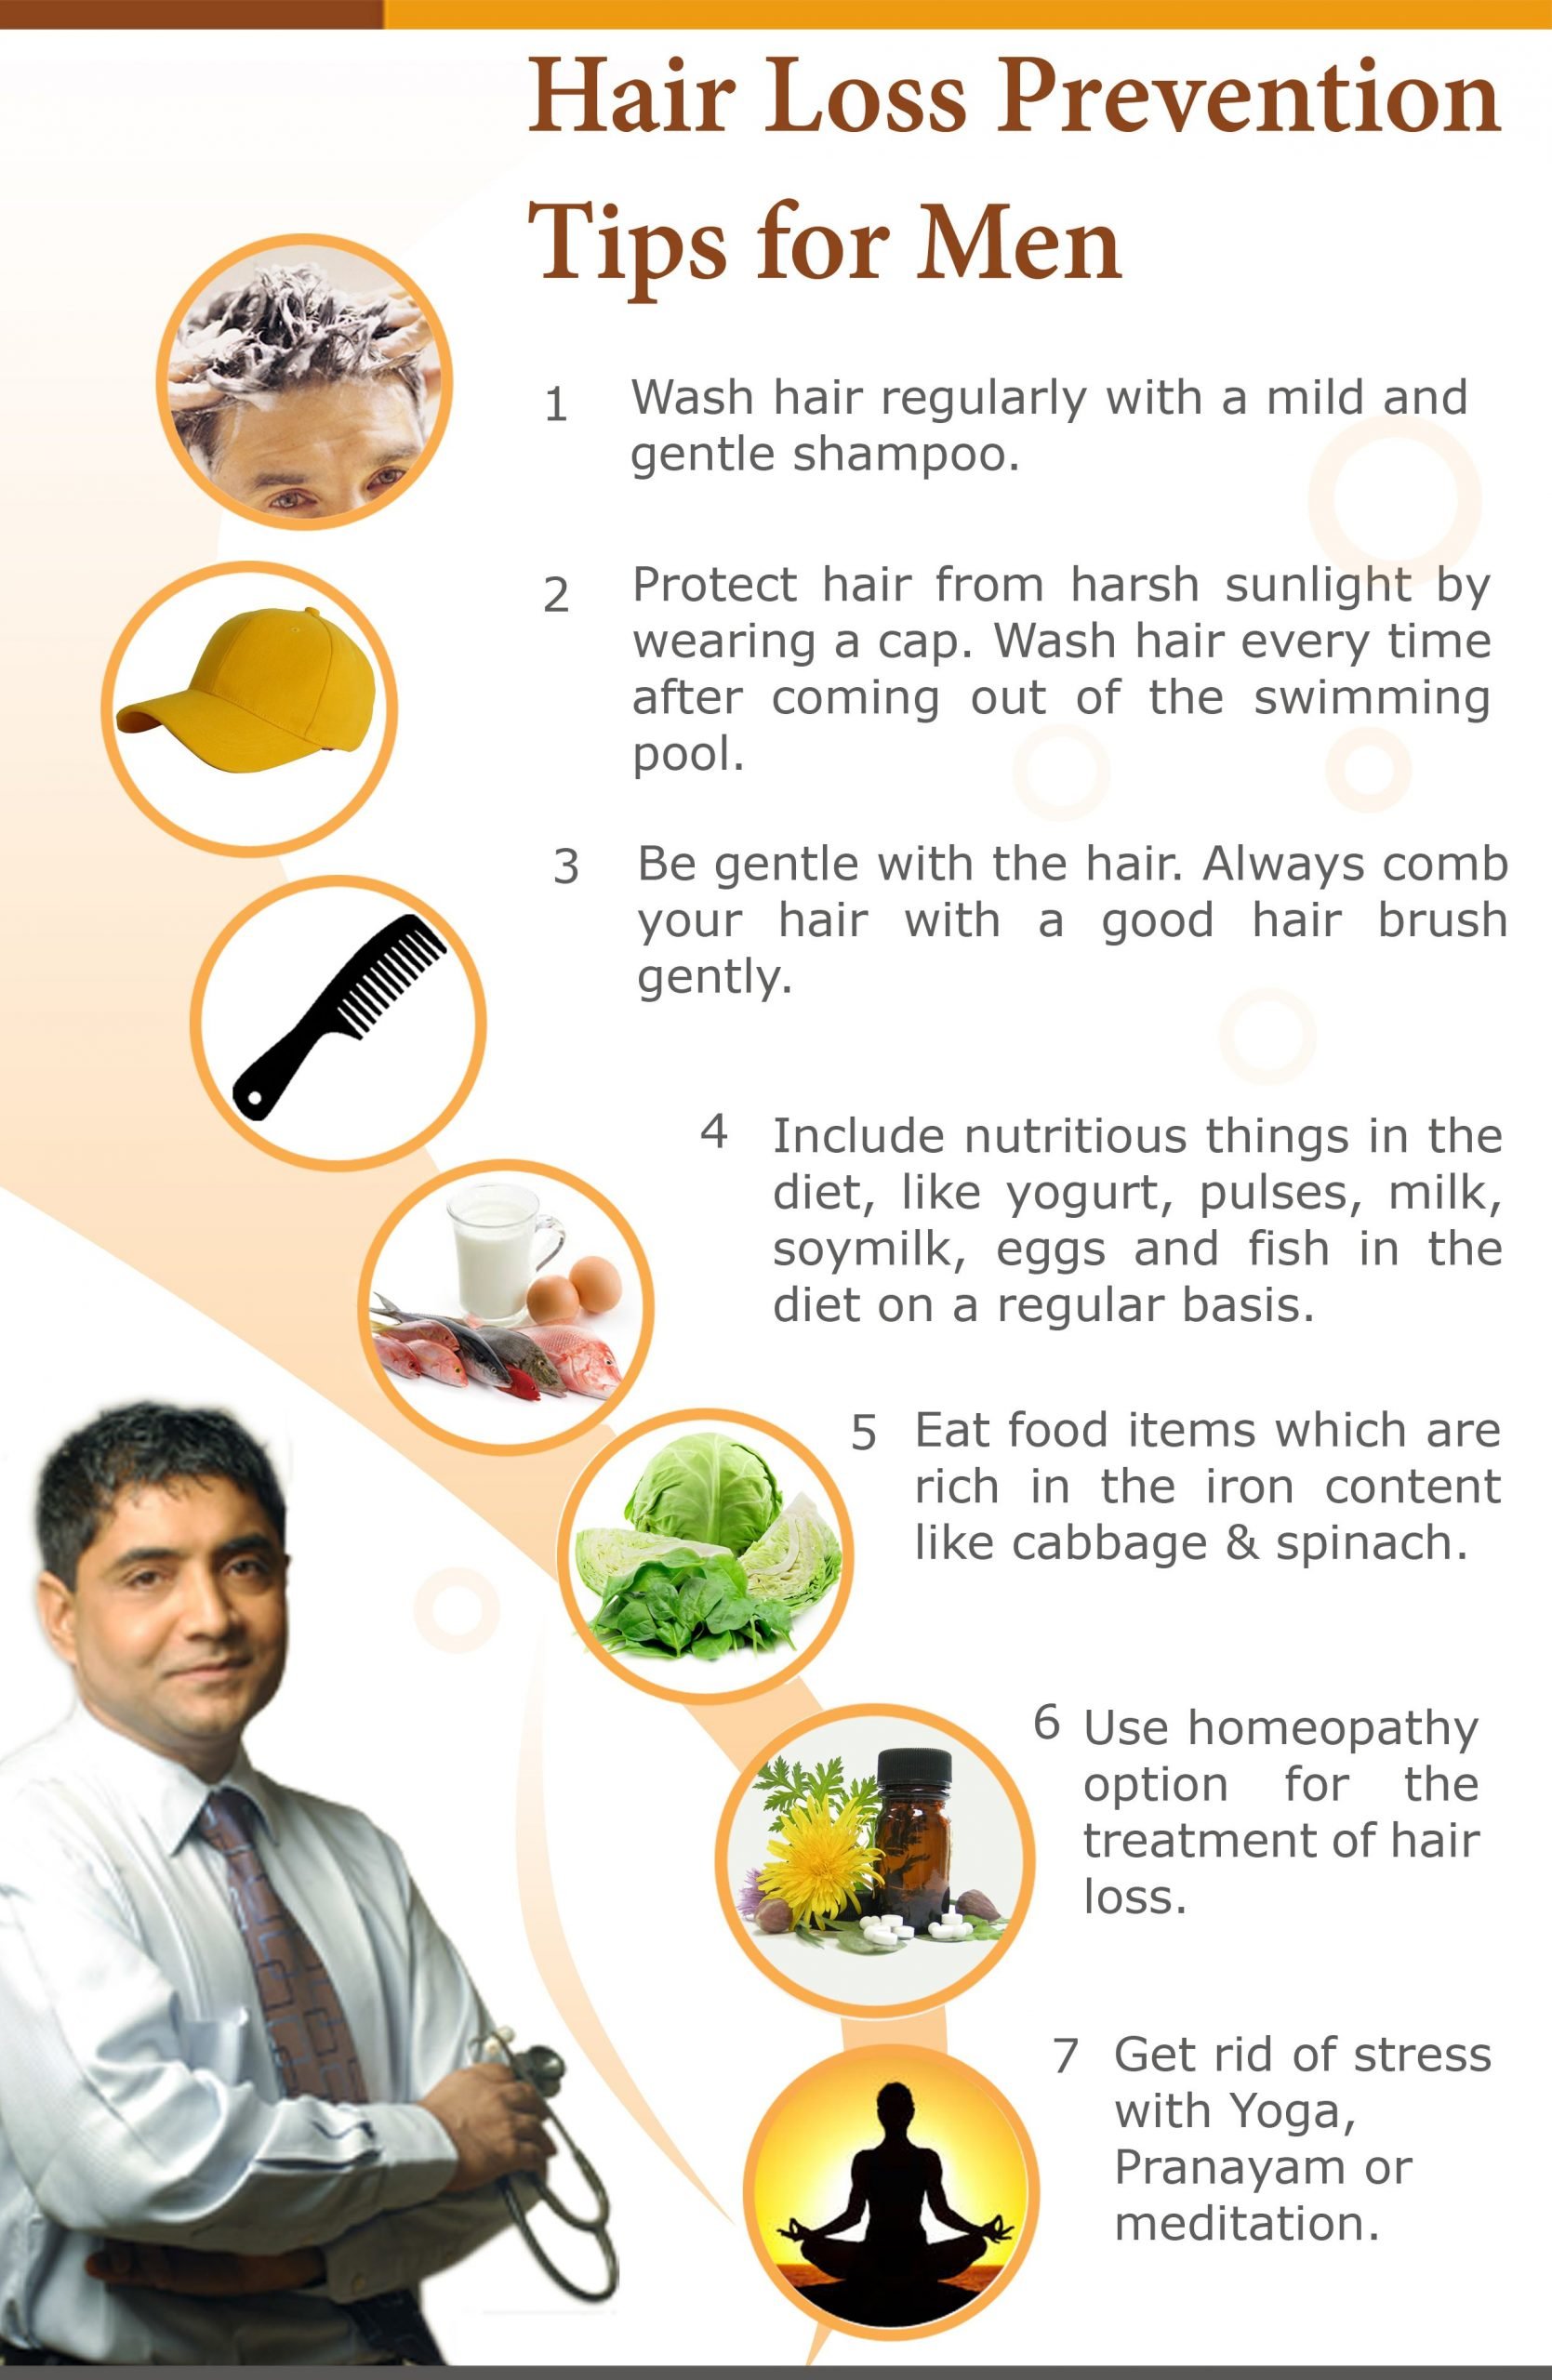 Hair Loss Prevention Tips for men More tips